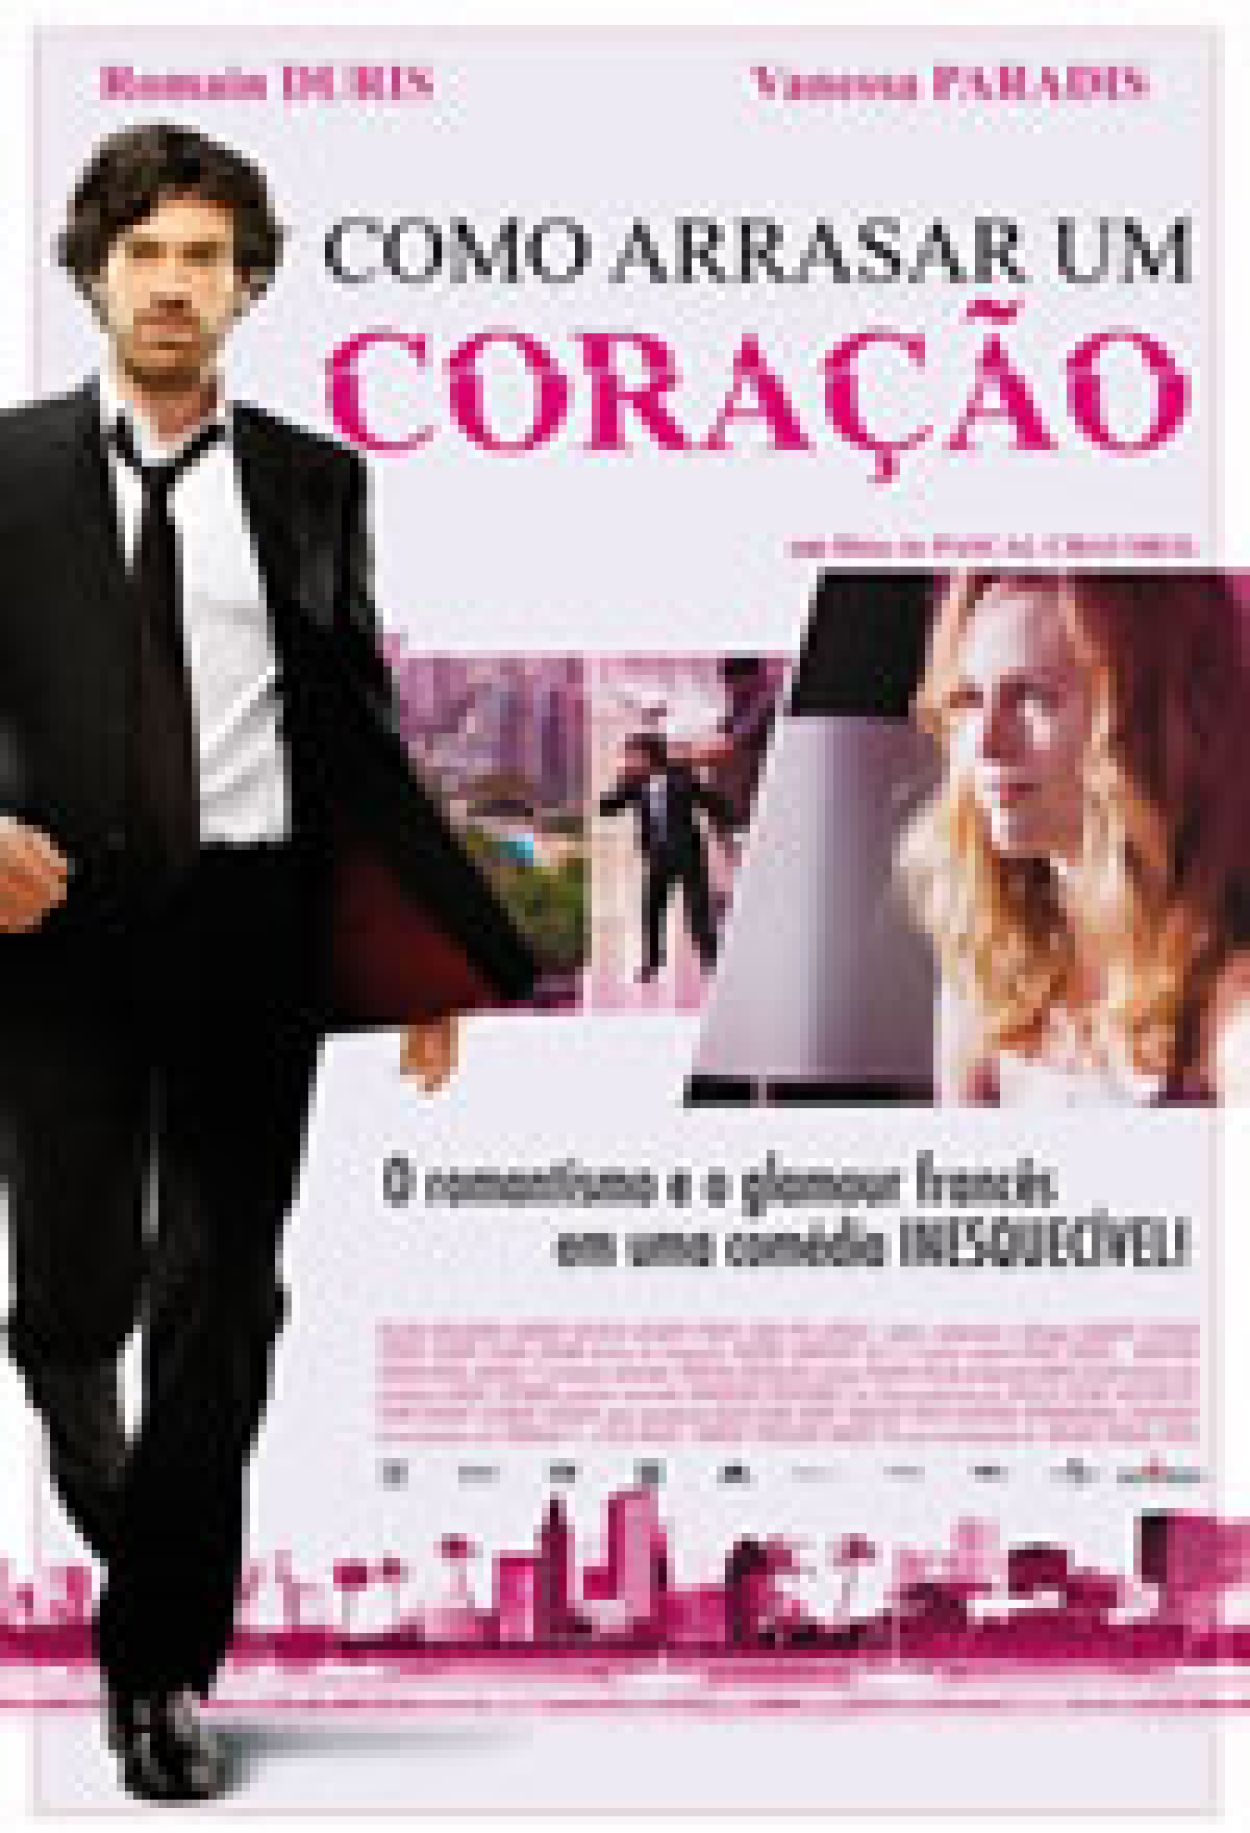 Penetras Bons de Bico - Filme 2005 - AdoroCinema